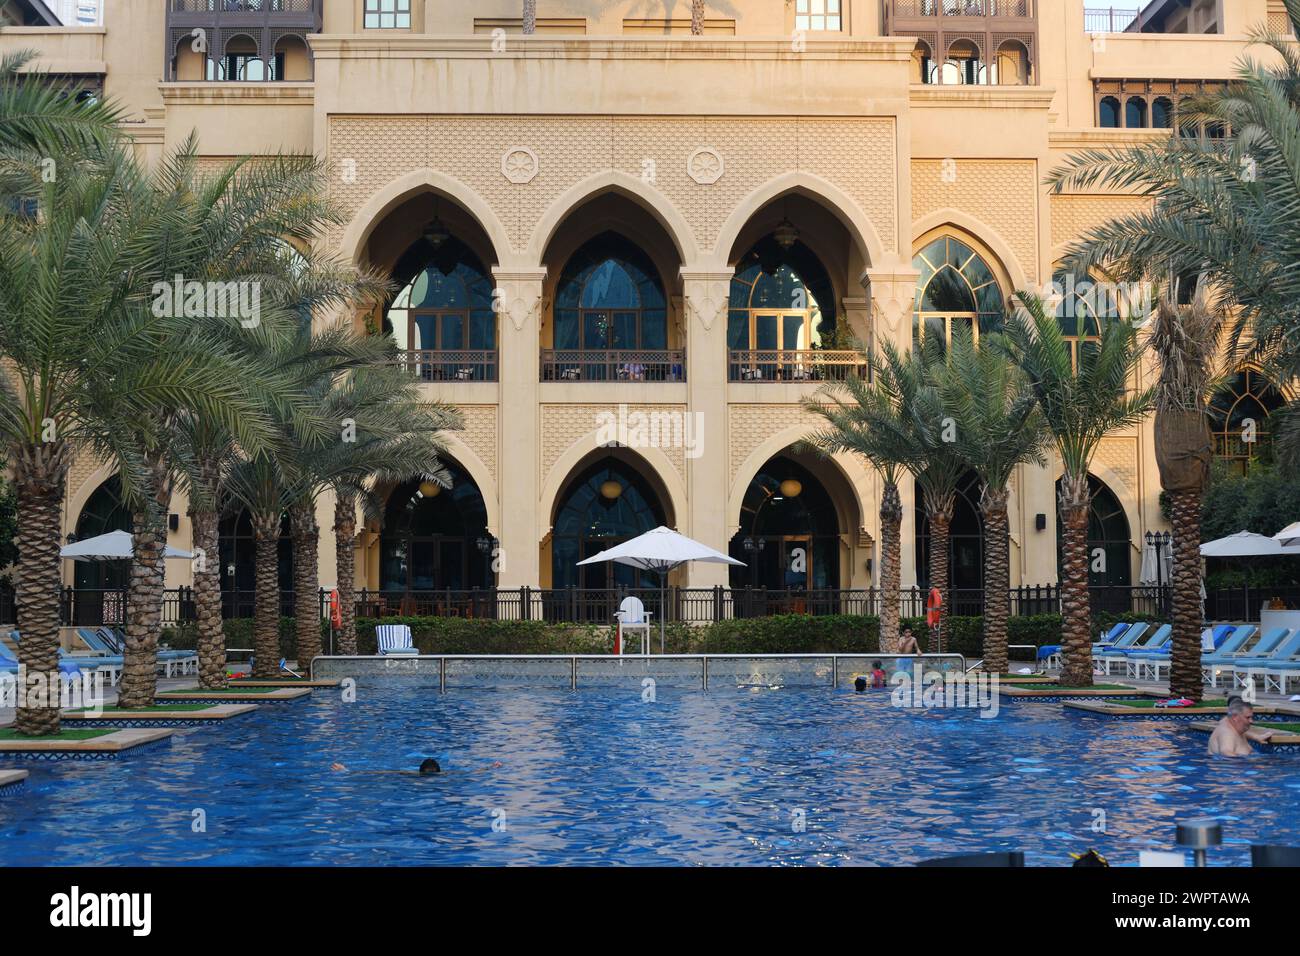 Il tramonto cade sull'elegante facciata del Palace Downtown, annidato tra lussureggianti palme e una piscina riflettente. Dubai, Emirati Arabi Uniti - 15 agosto 2023 Foto Stock